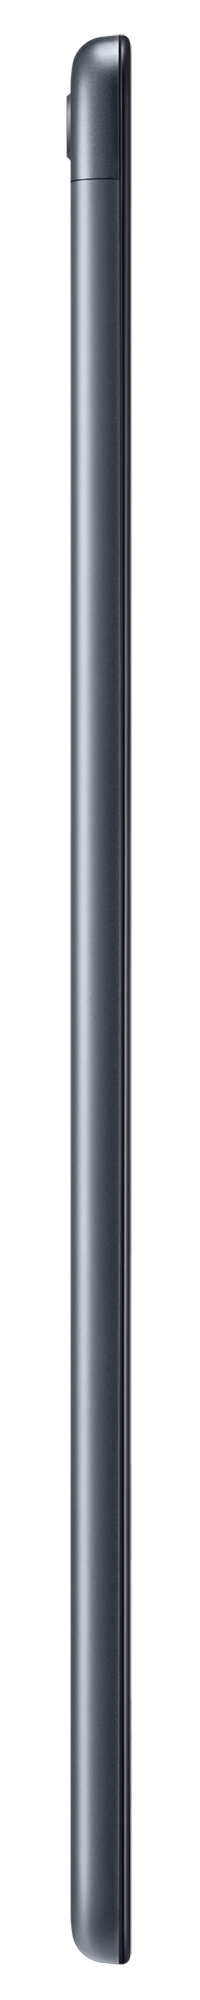 Samsung Galaxy Tab A 10.1-inch 32GB/4G Tablet - Black